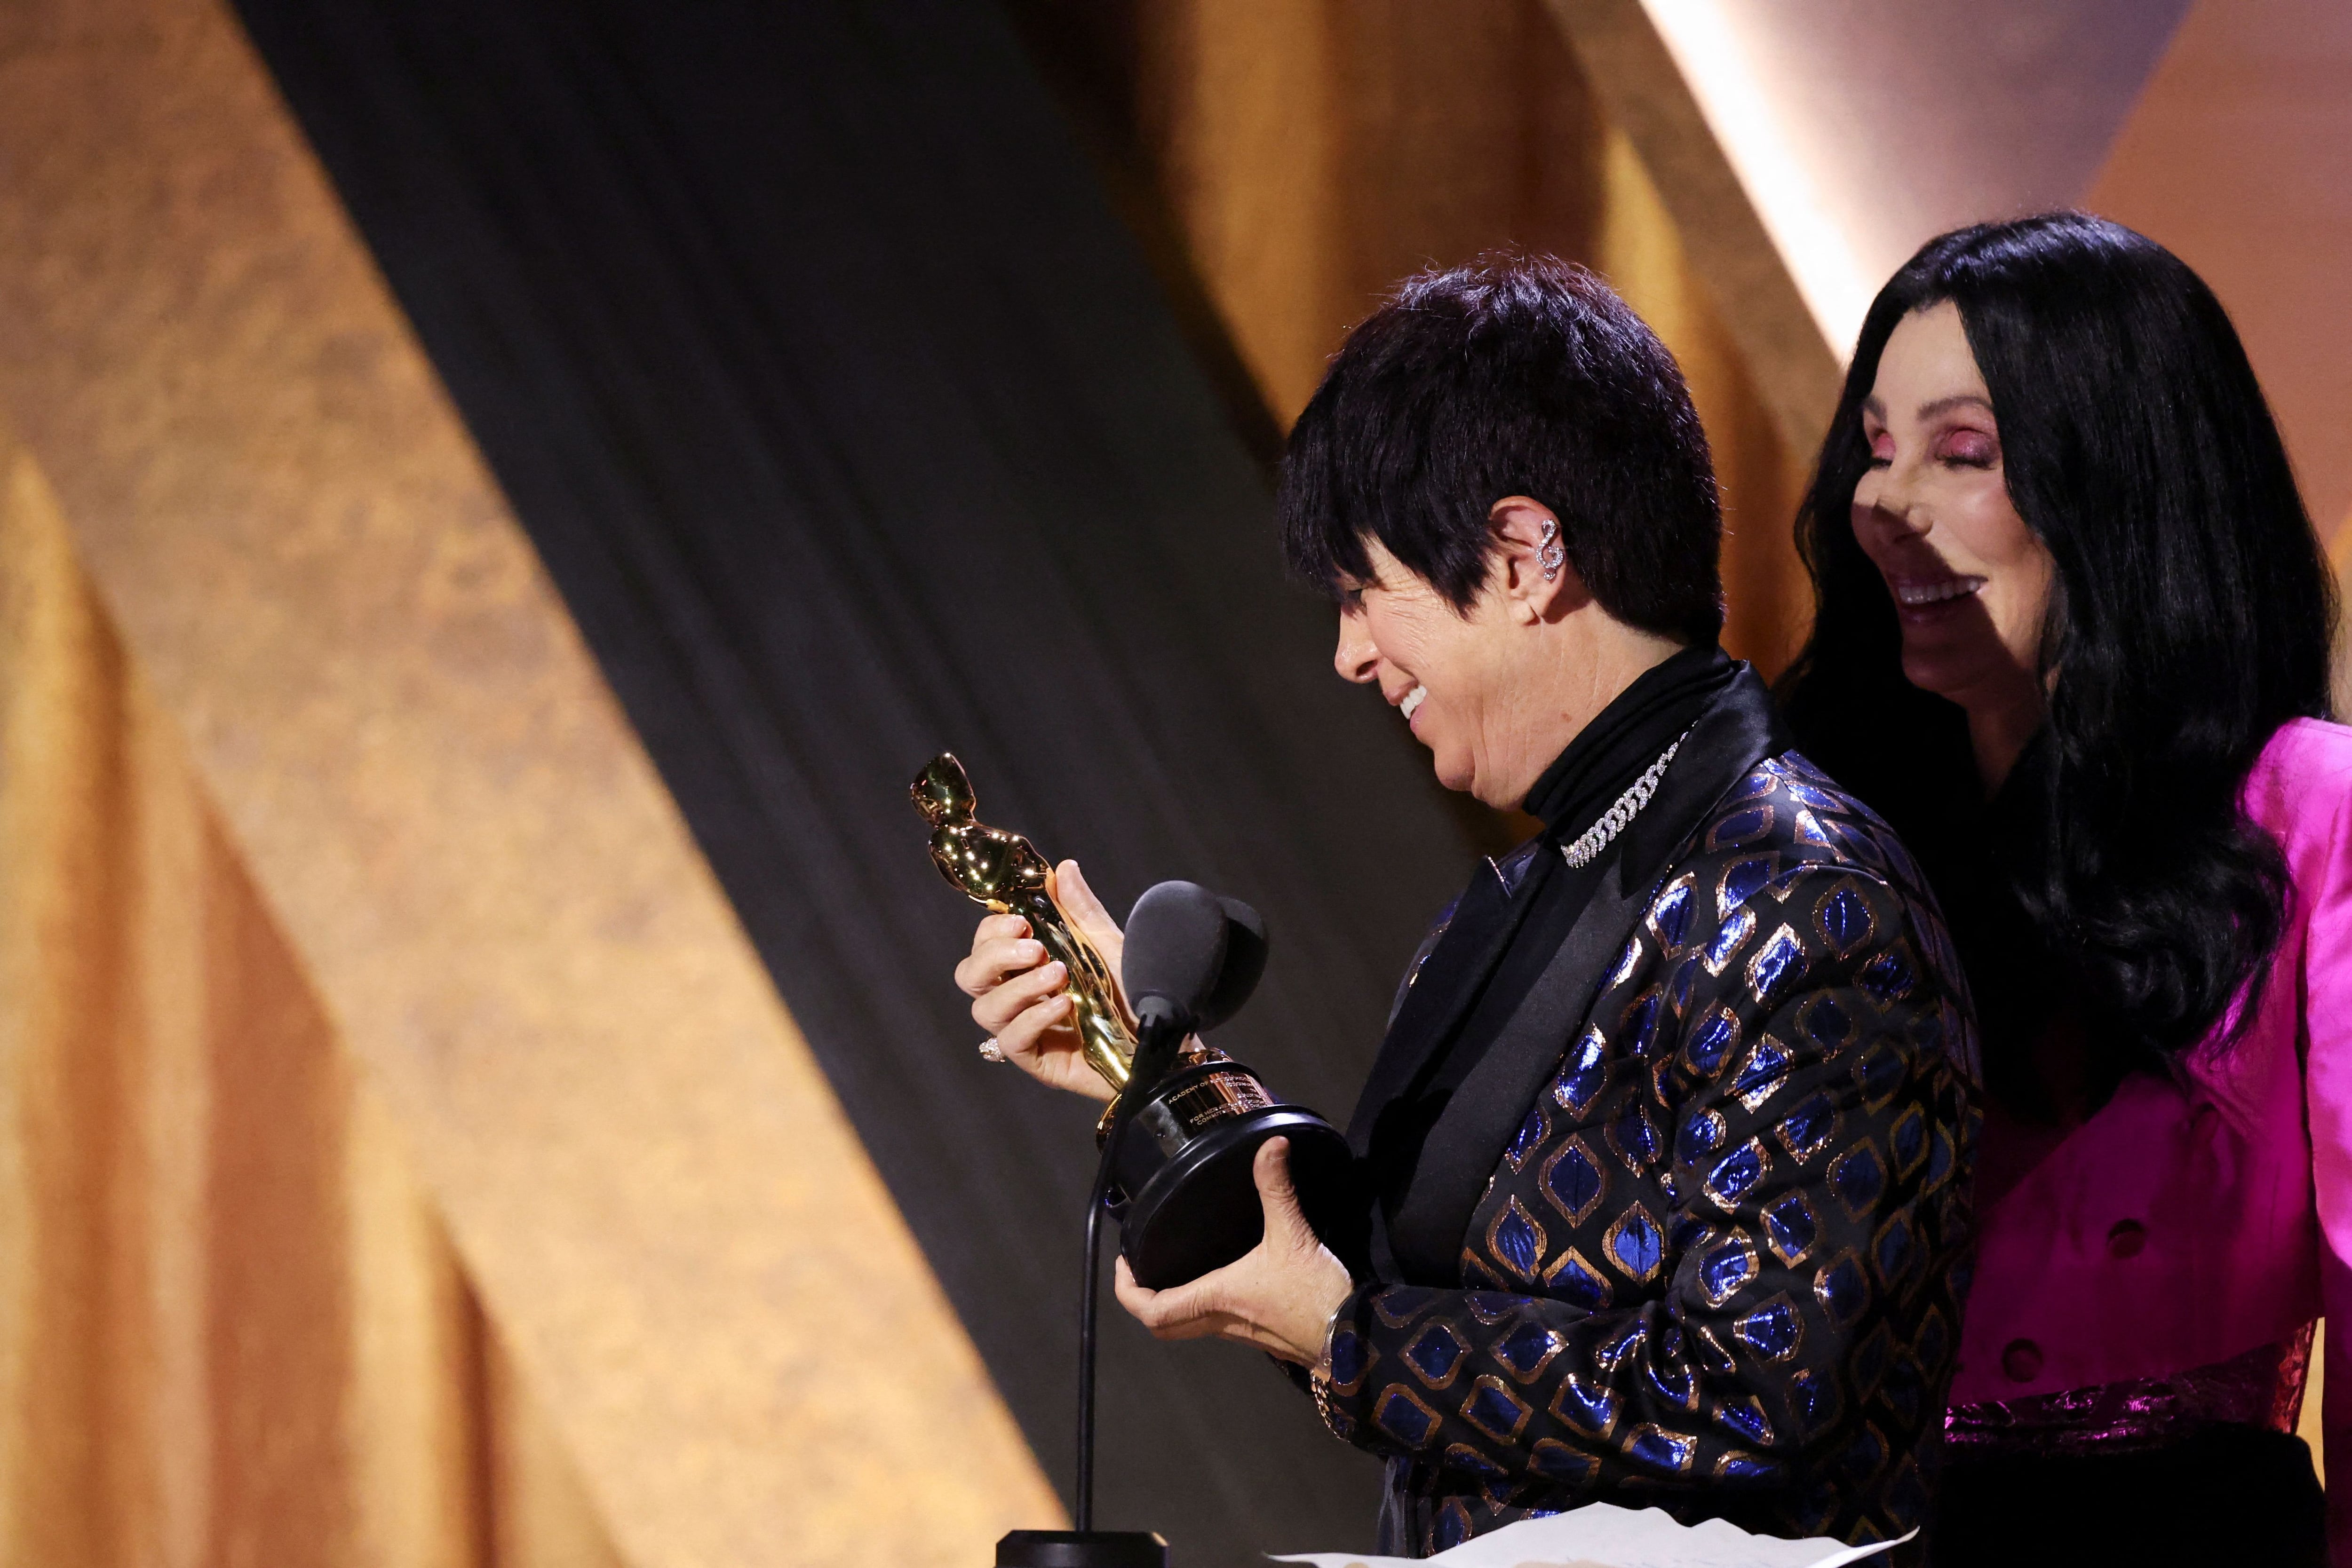 La música Diane Warren acepta su Oscar honorario en los 13th Governors Awards en Los Ángeles, California, EE. UU., 19 de noviembre de 2022. REUTERS/Mario Anzuoni
